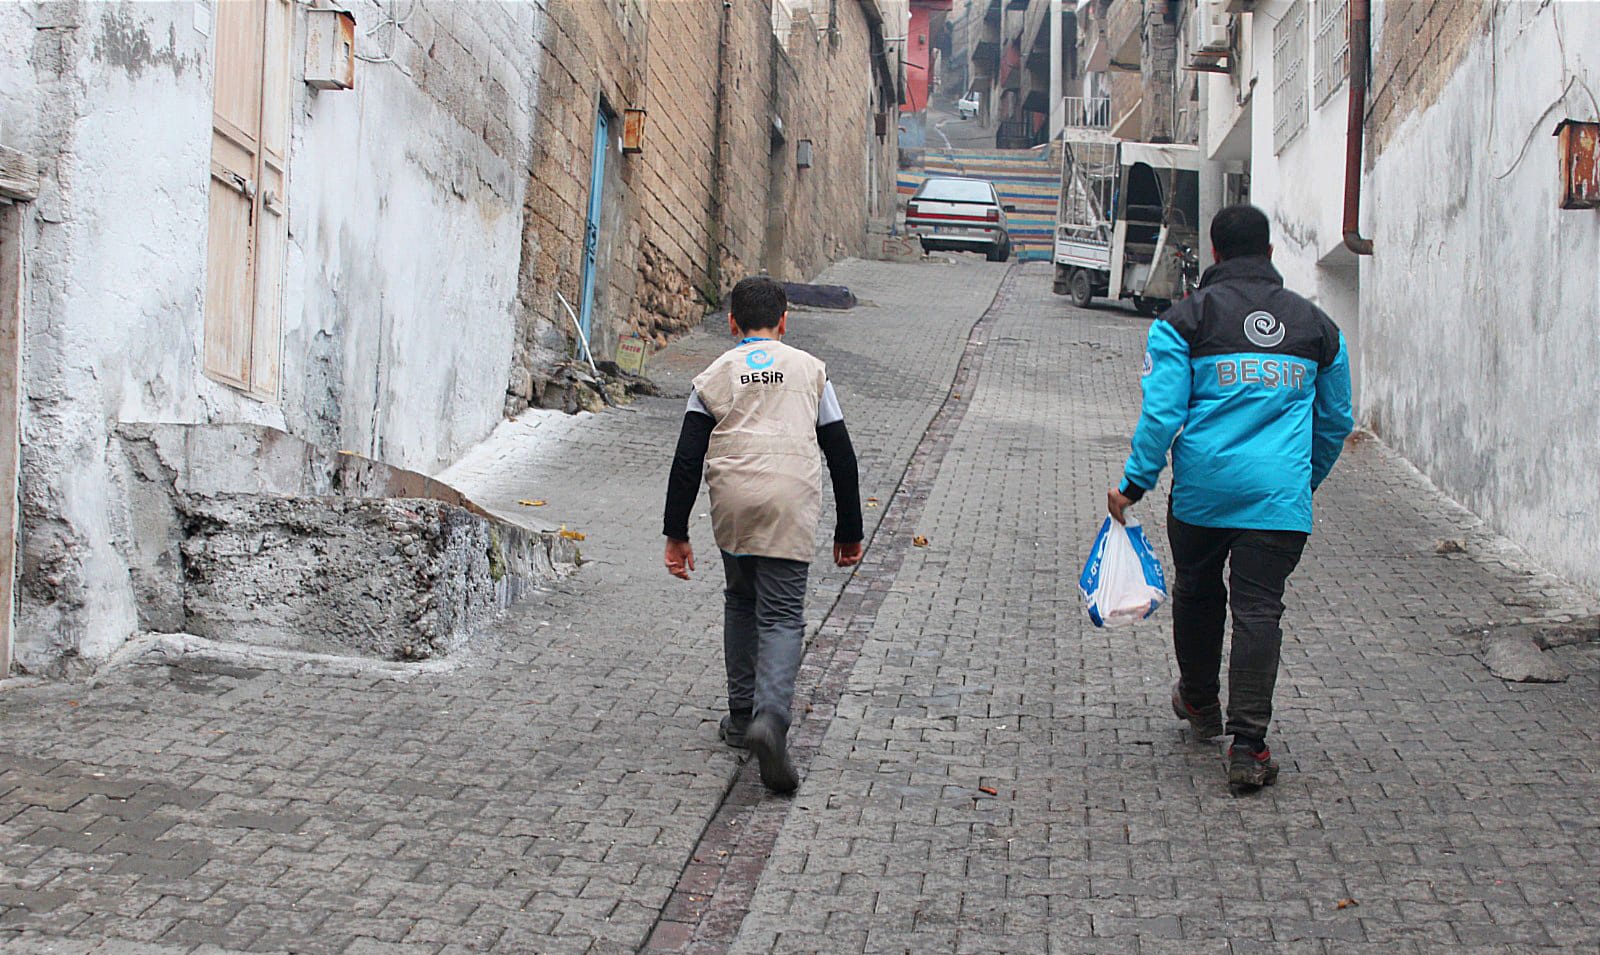 Suriye’deki Briket Evler Projemizde 4. Etaptayız